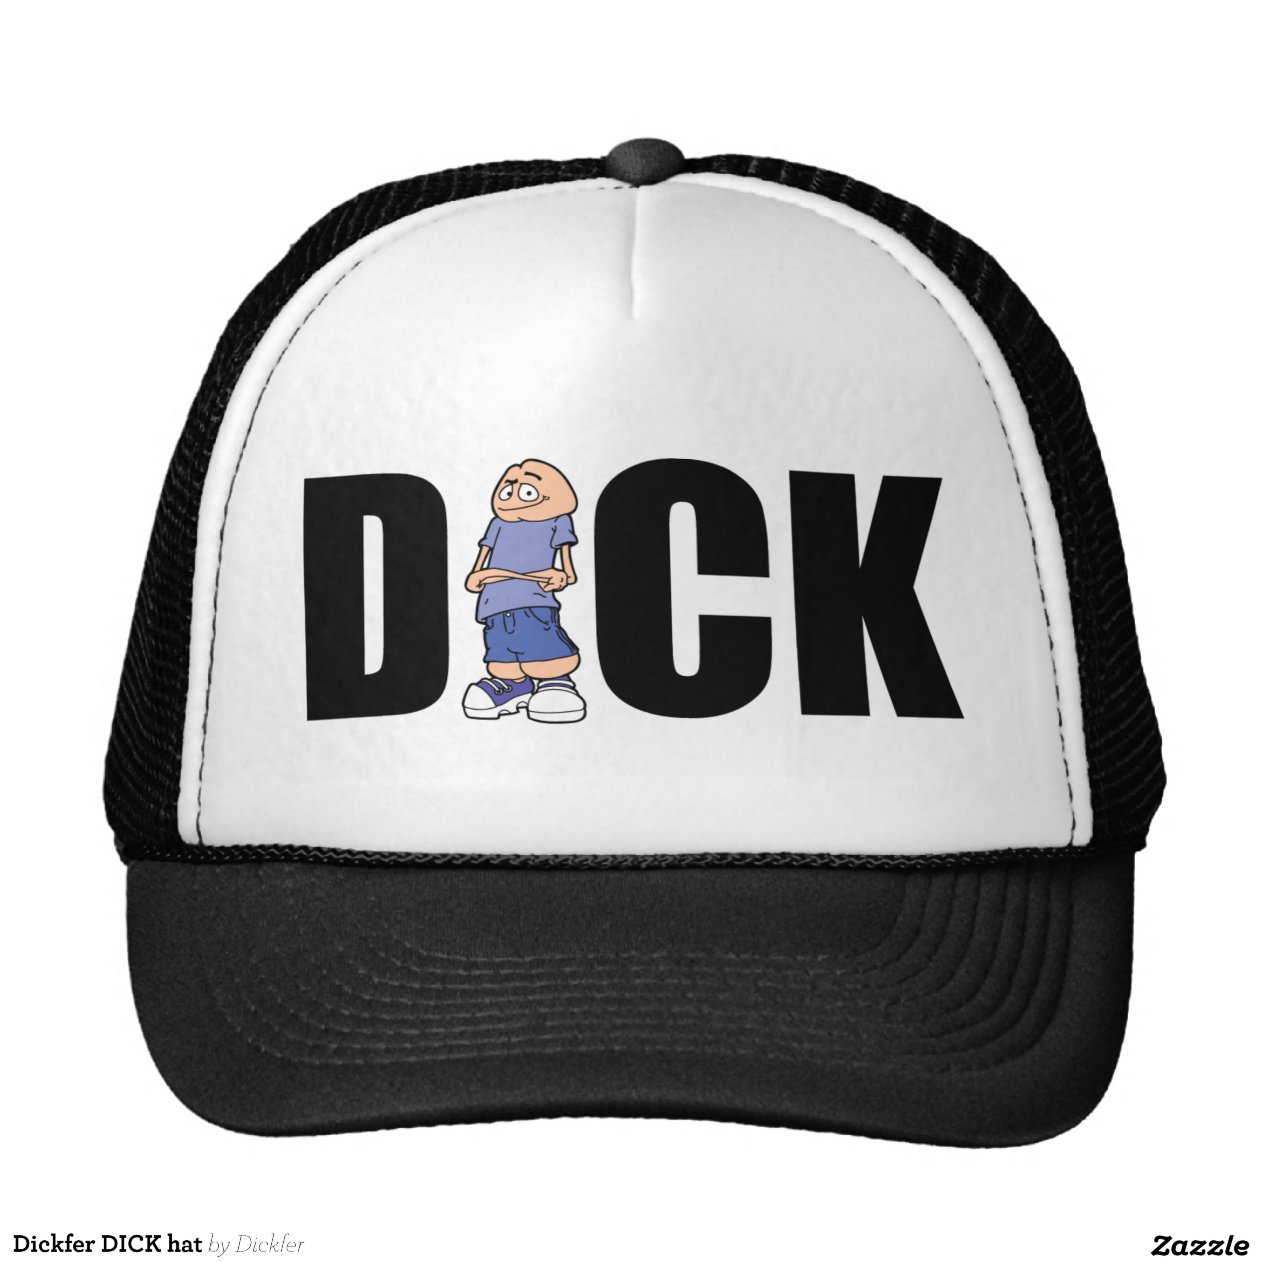 dickfer_dick_hat-r26535ce13fcf43eaac8a66